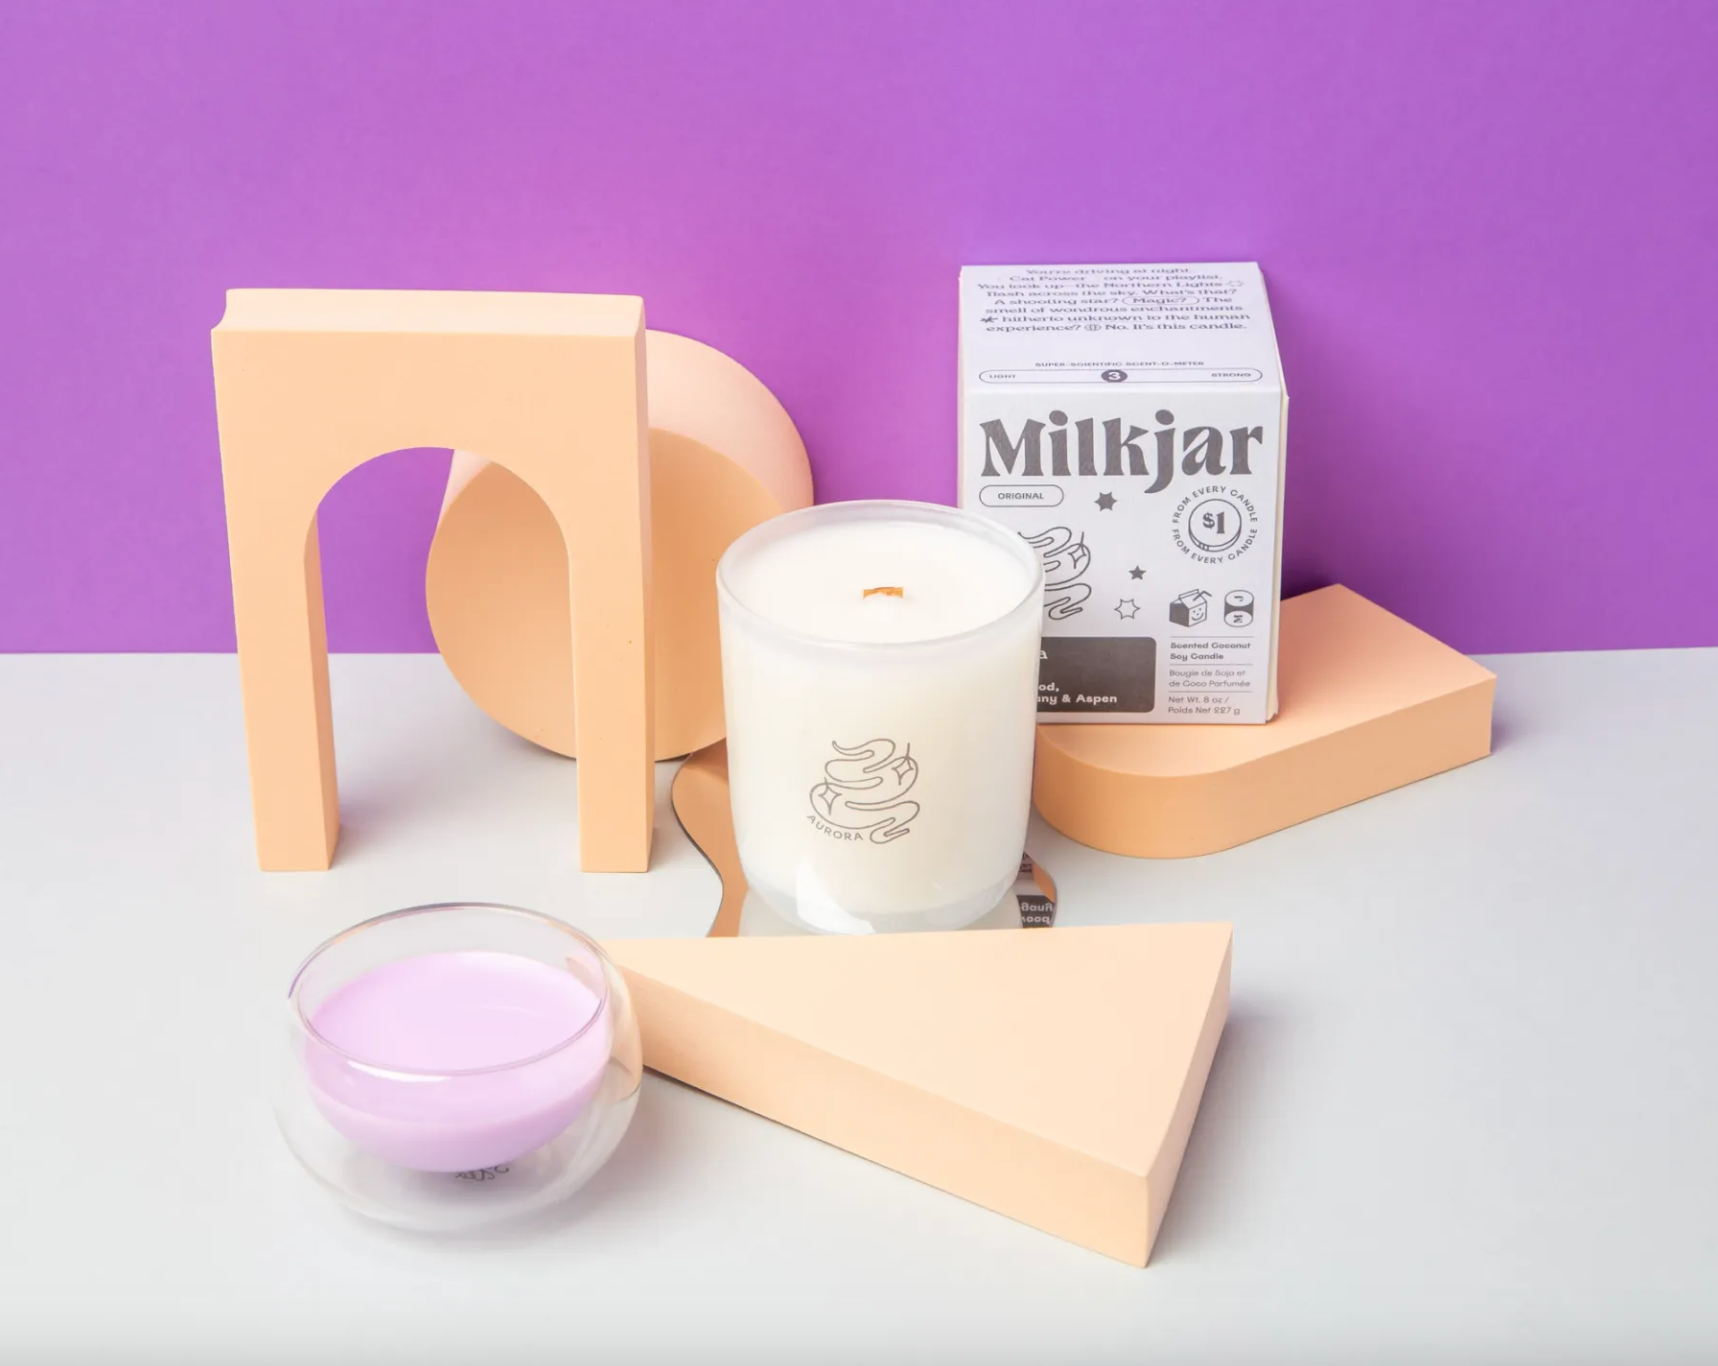 milk jar candle - aurora